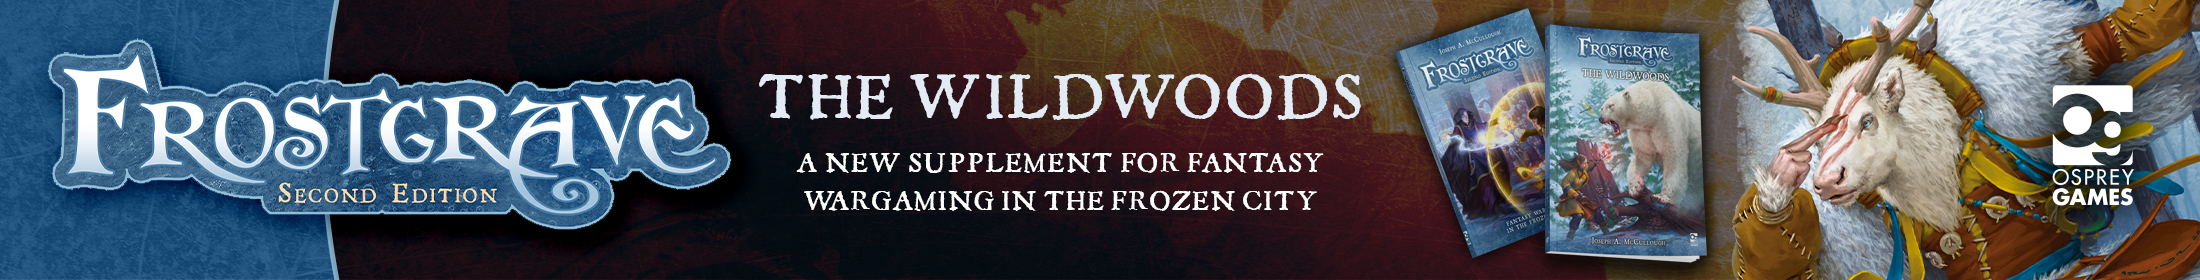 Frostgrave: The Wildwoods